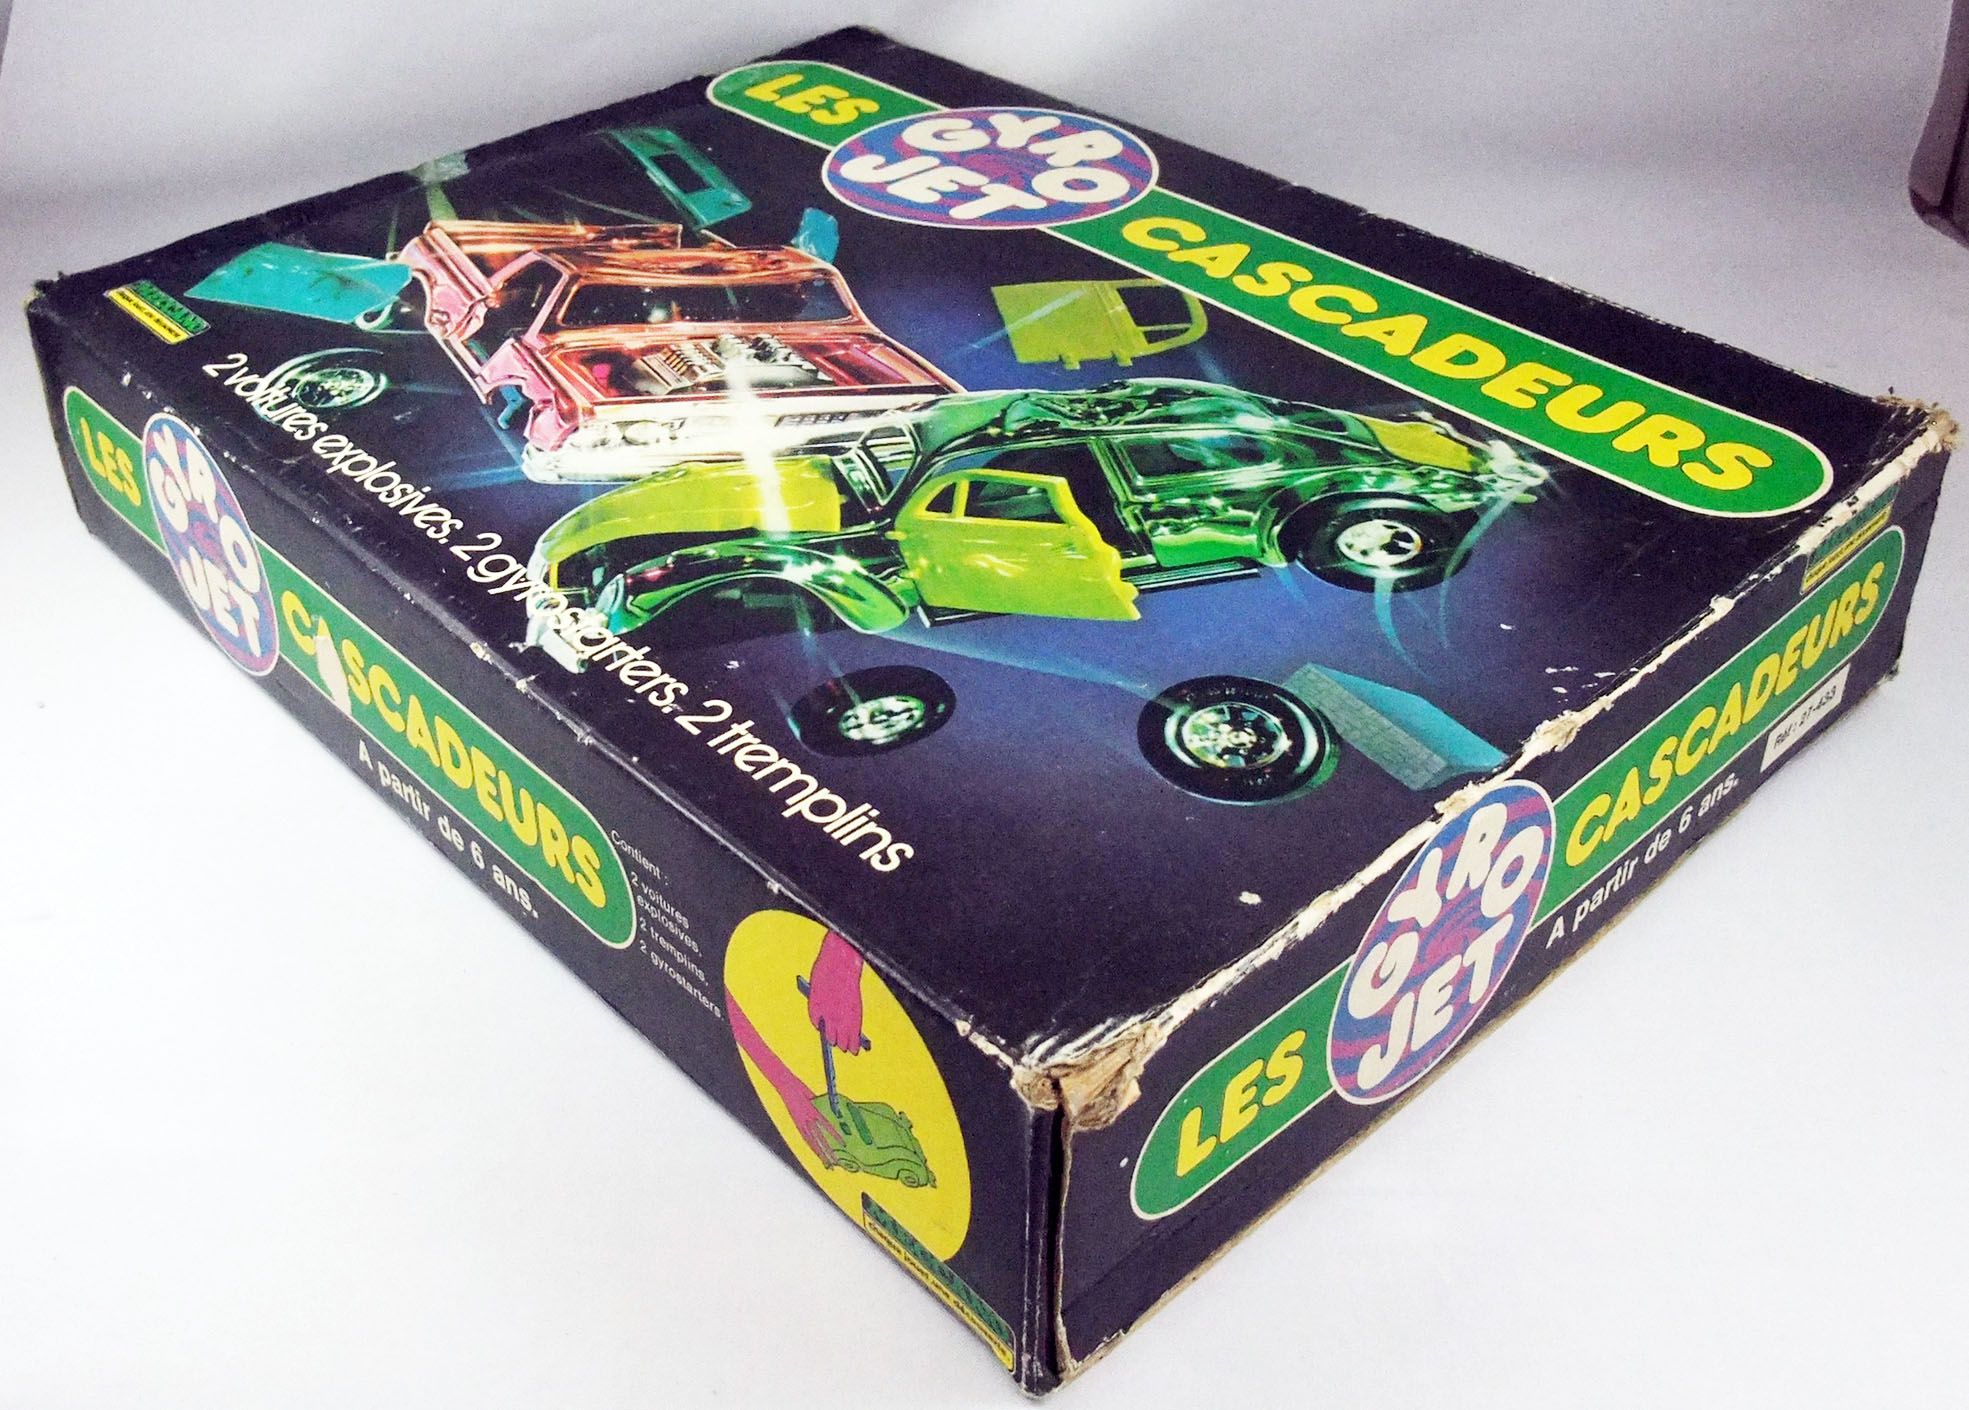 gyro jet - les cascadeurs - jouet jeu vintage années 80 boîte - meccano